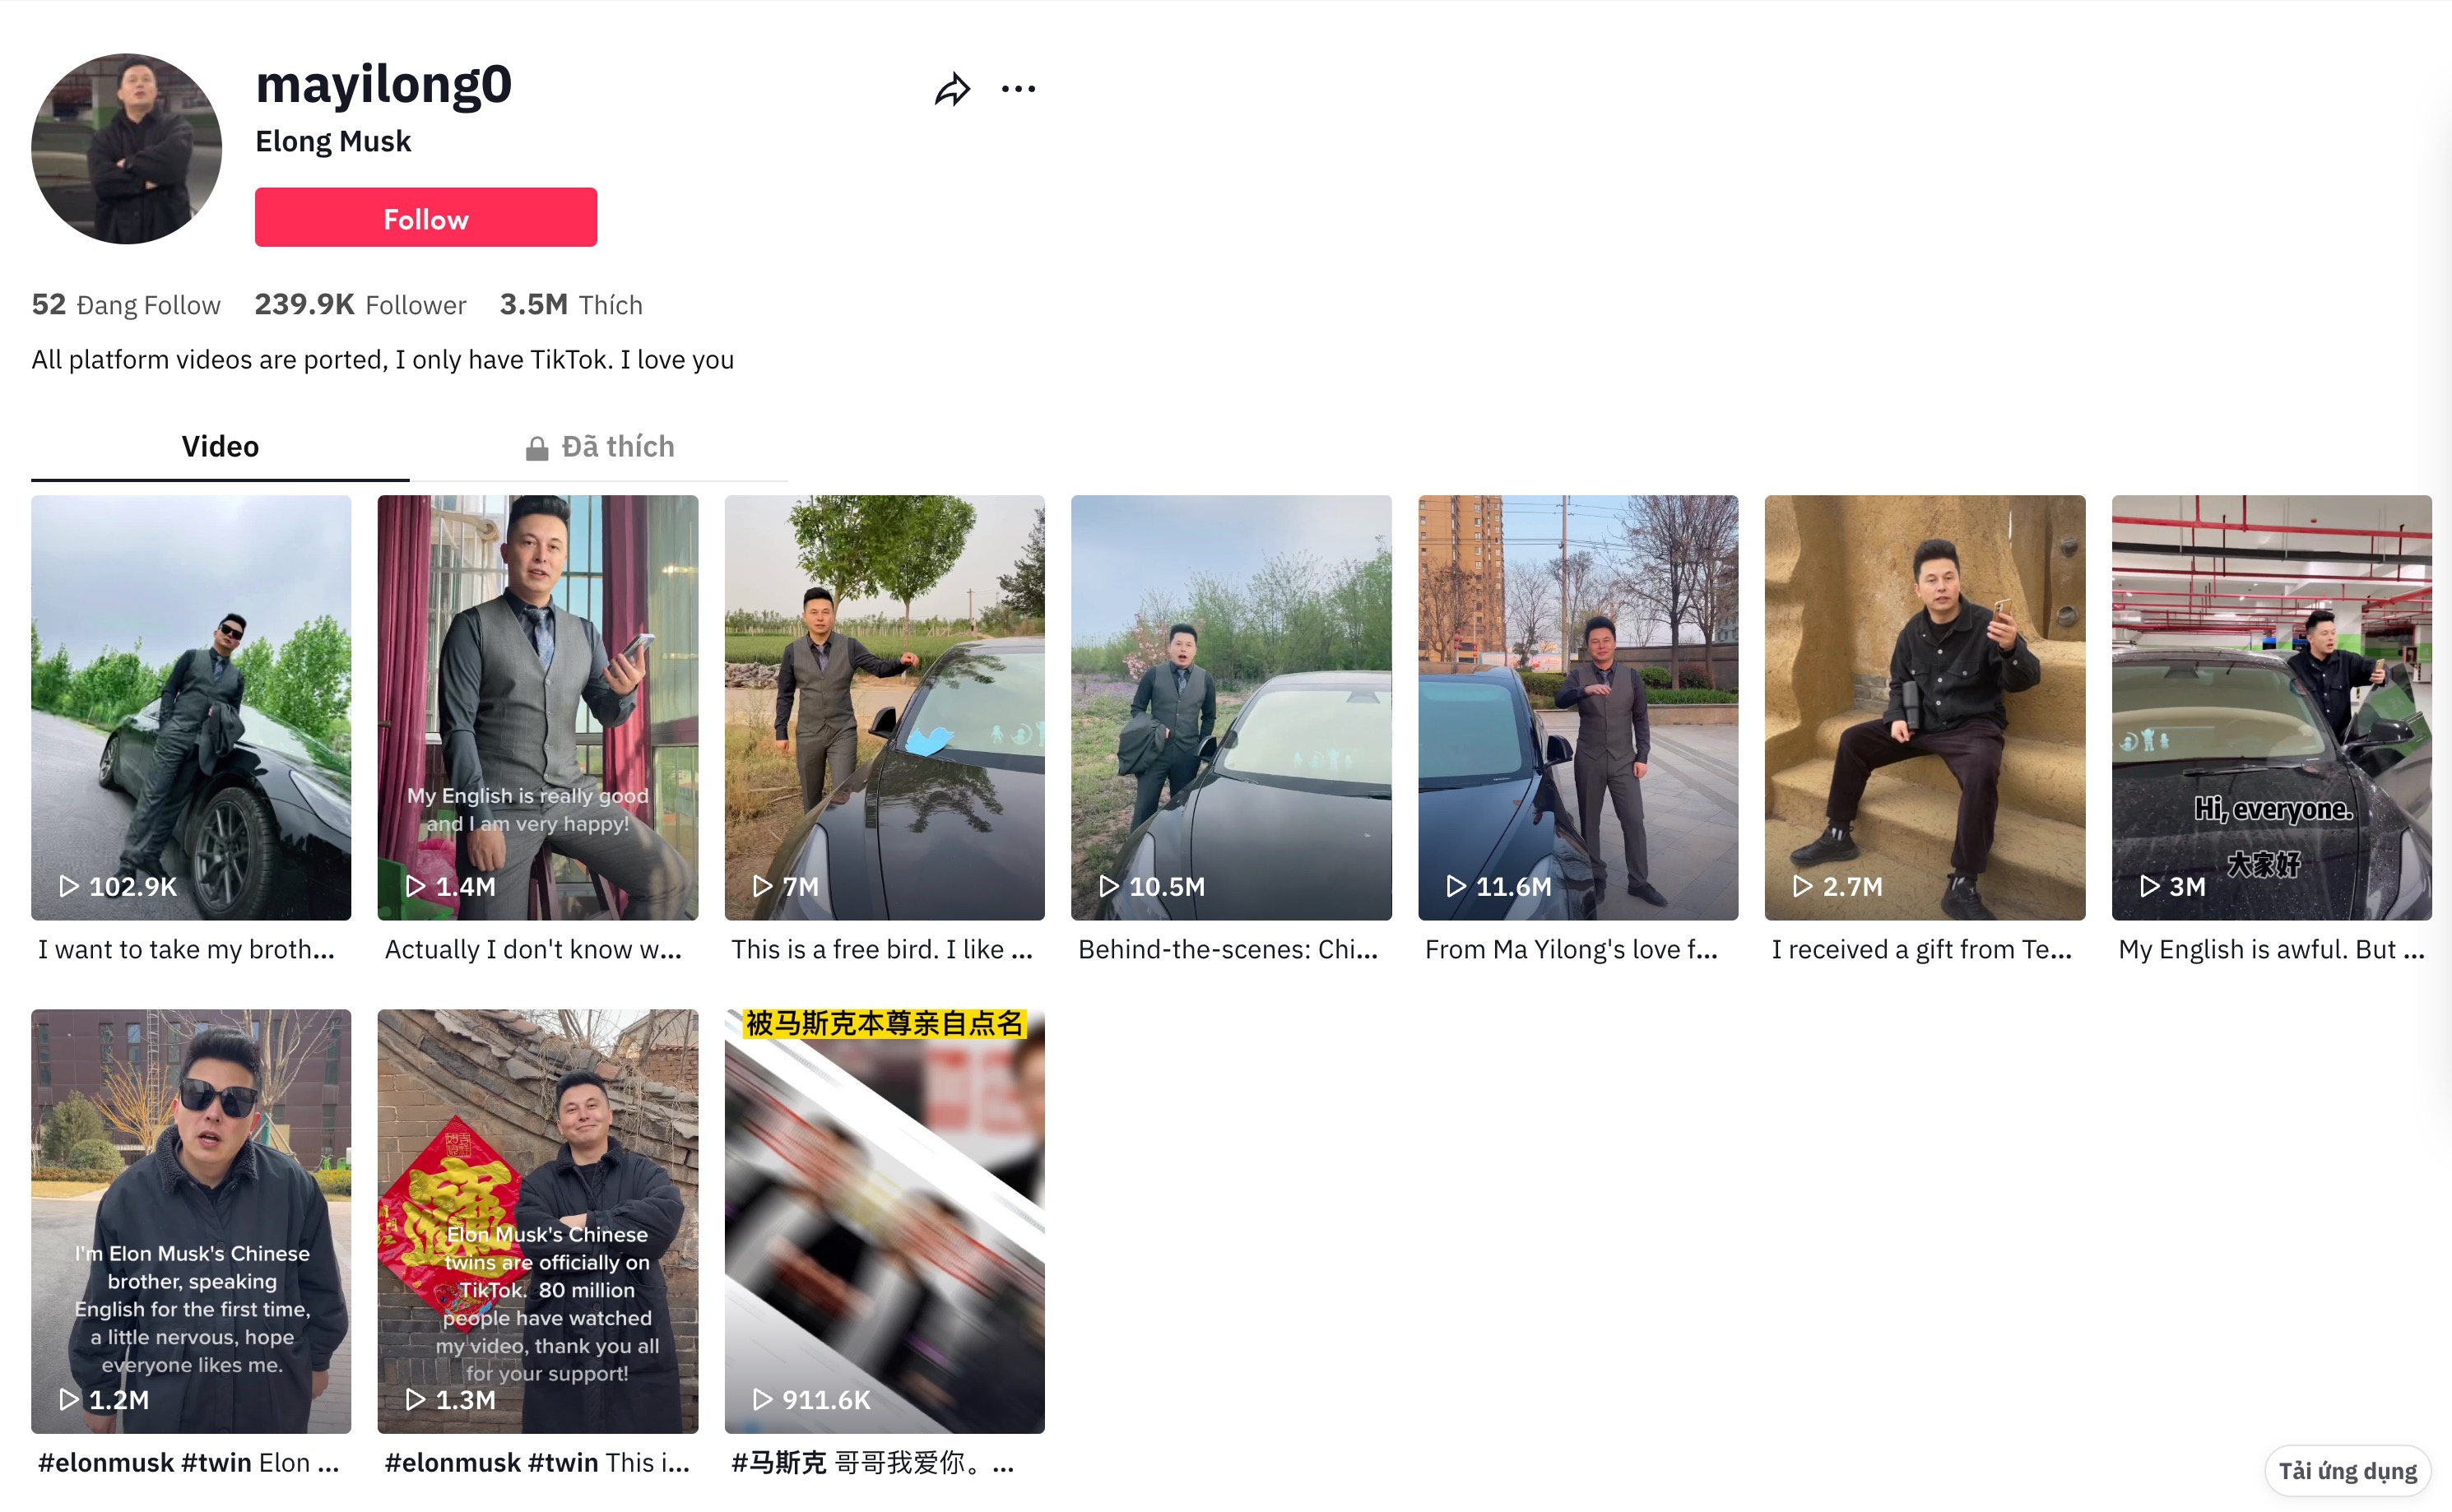 Bản sao Elon Musk đang bị xóa khỏi mạng xã hội ở Trung Quốc - ảnh 2